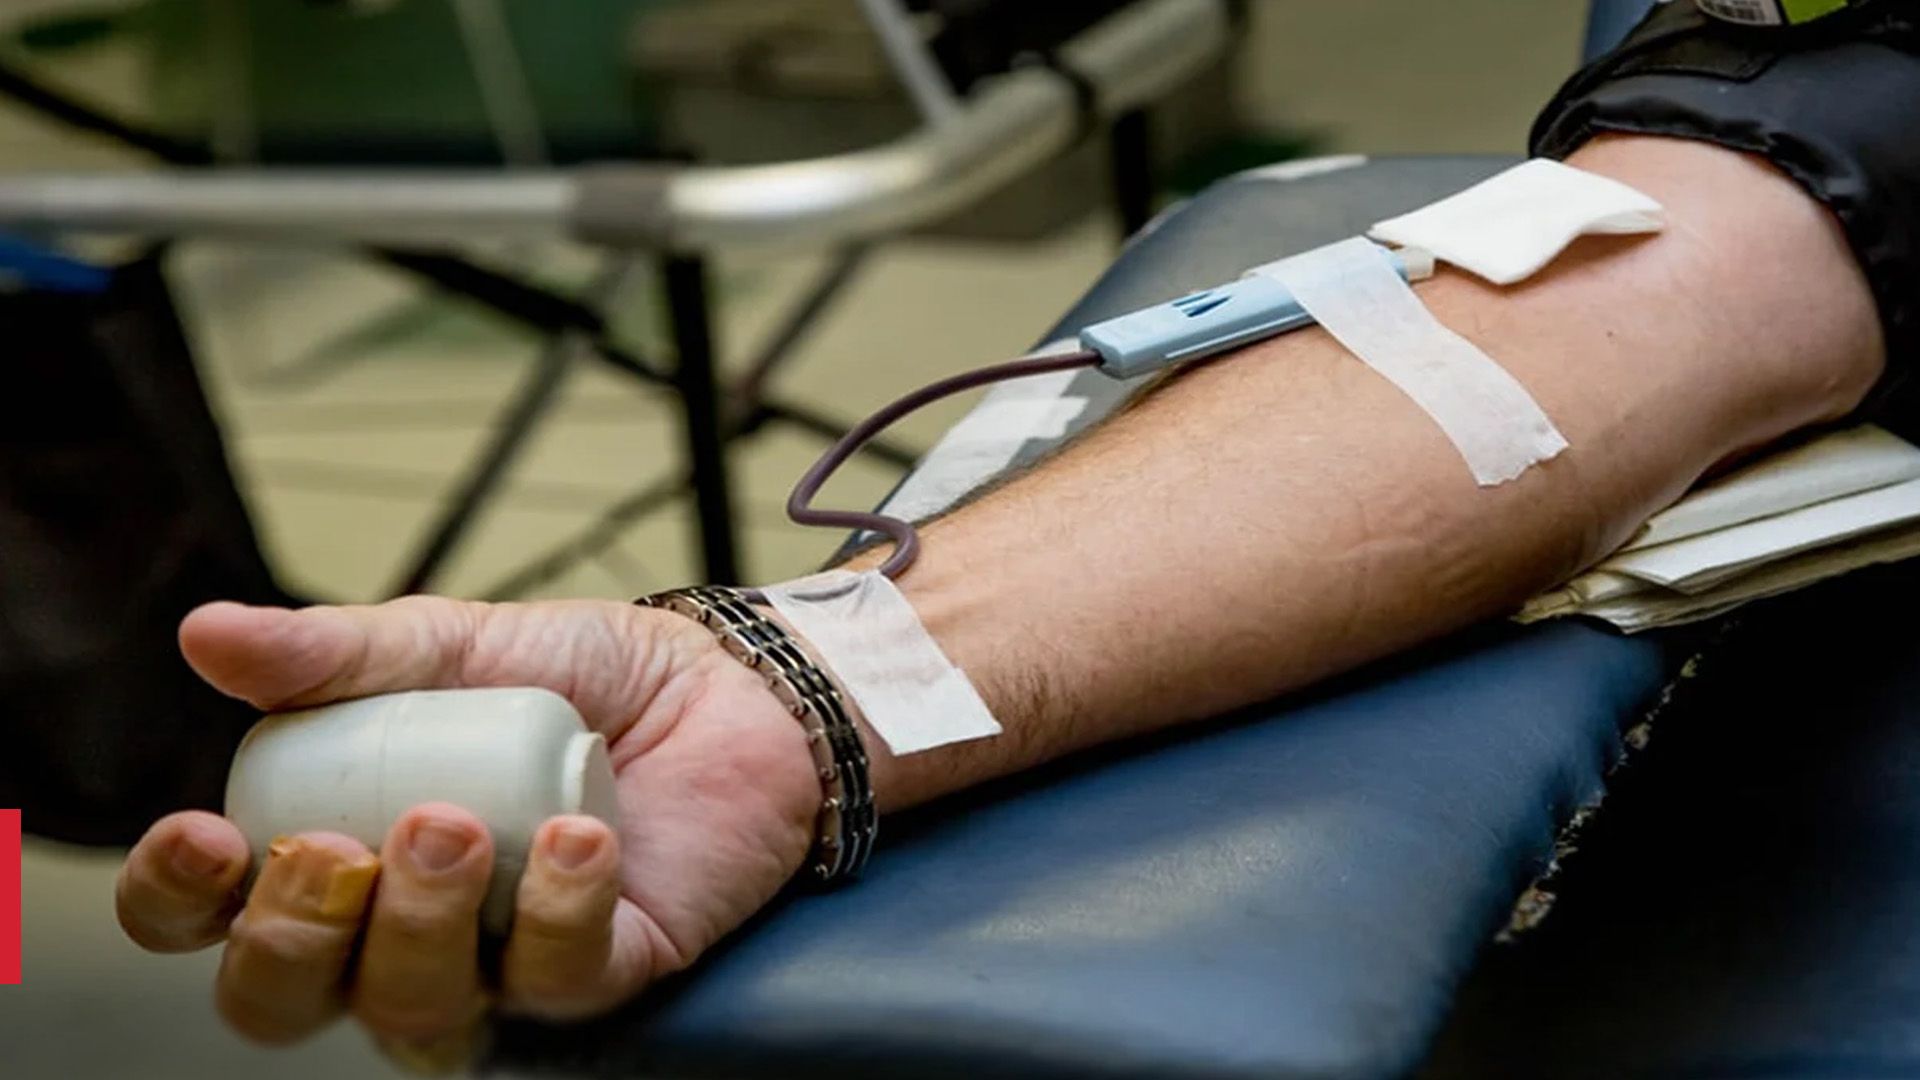 Як часто можна здавати кров і як швидко відновлюється організм після донації - Здоровʼя 24